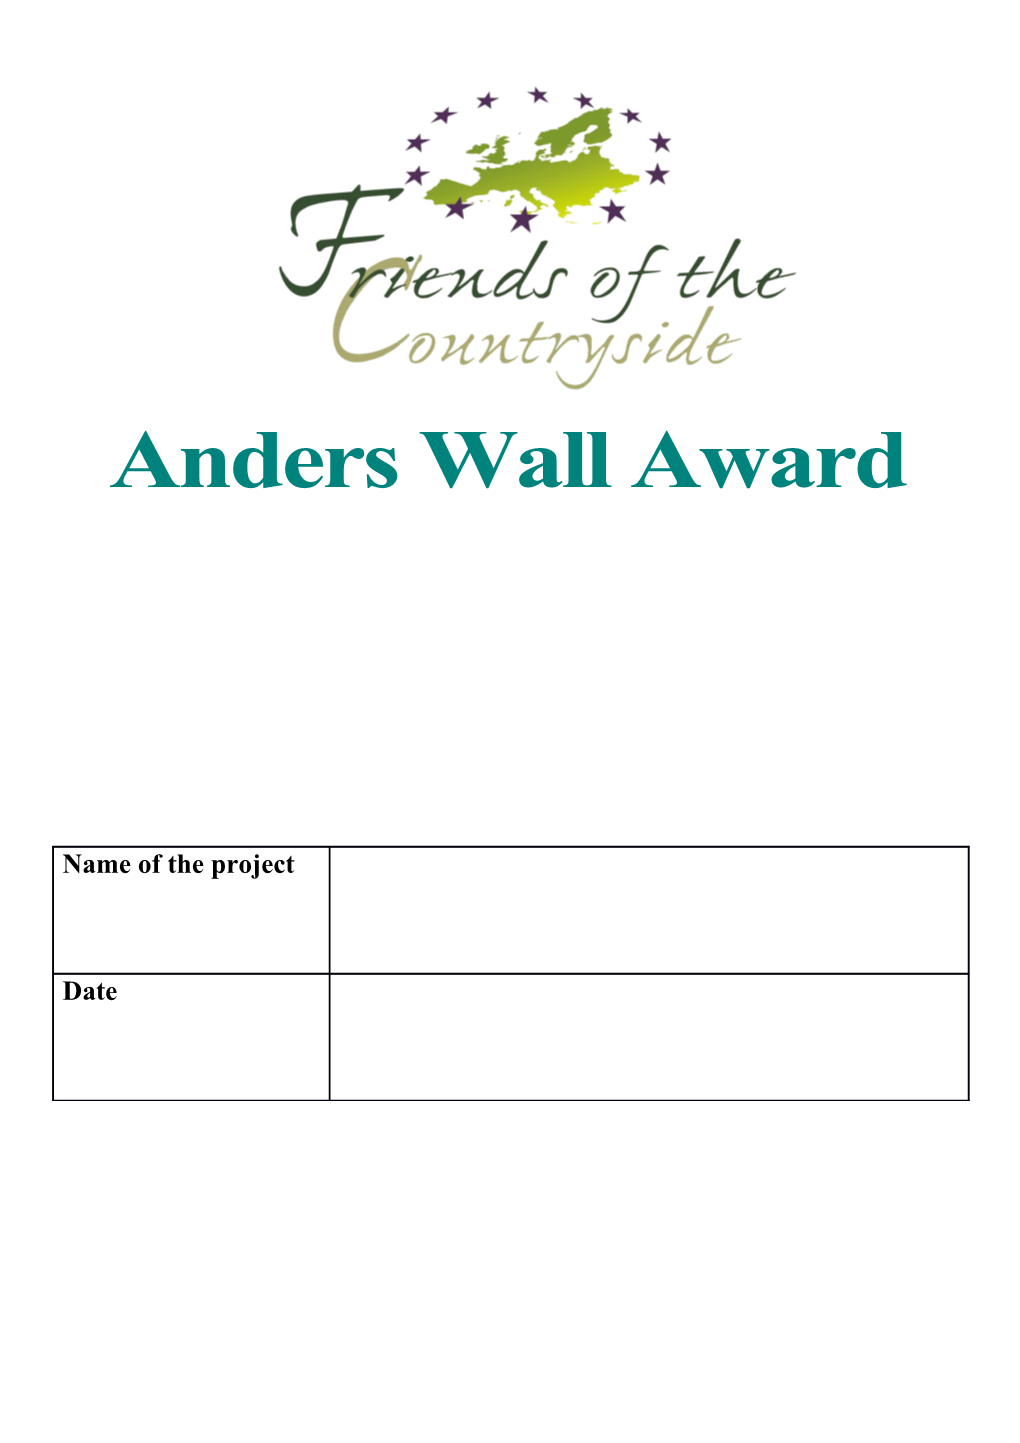 Anders Wall Award